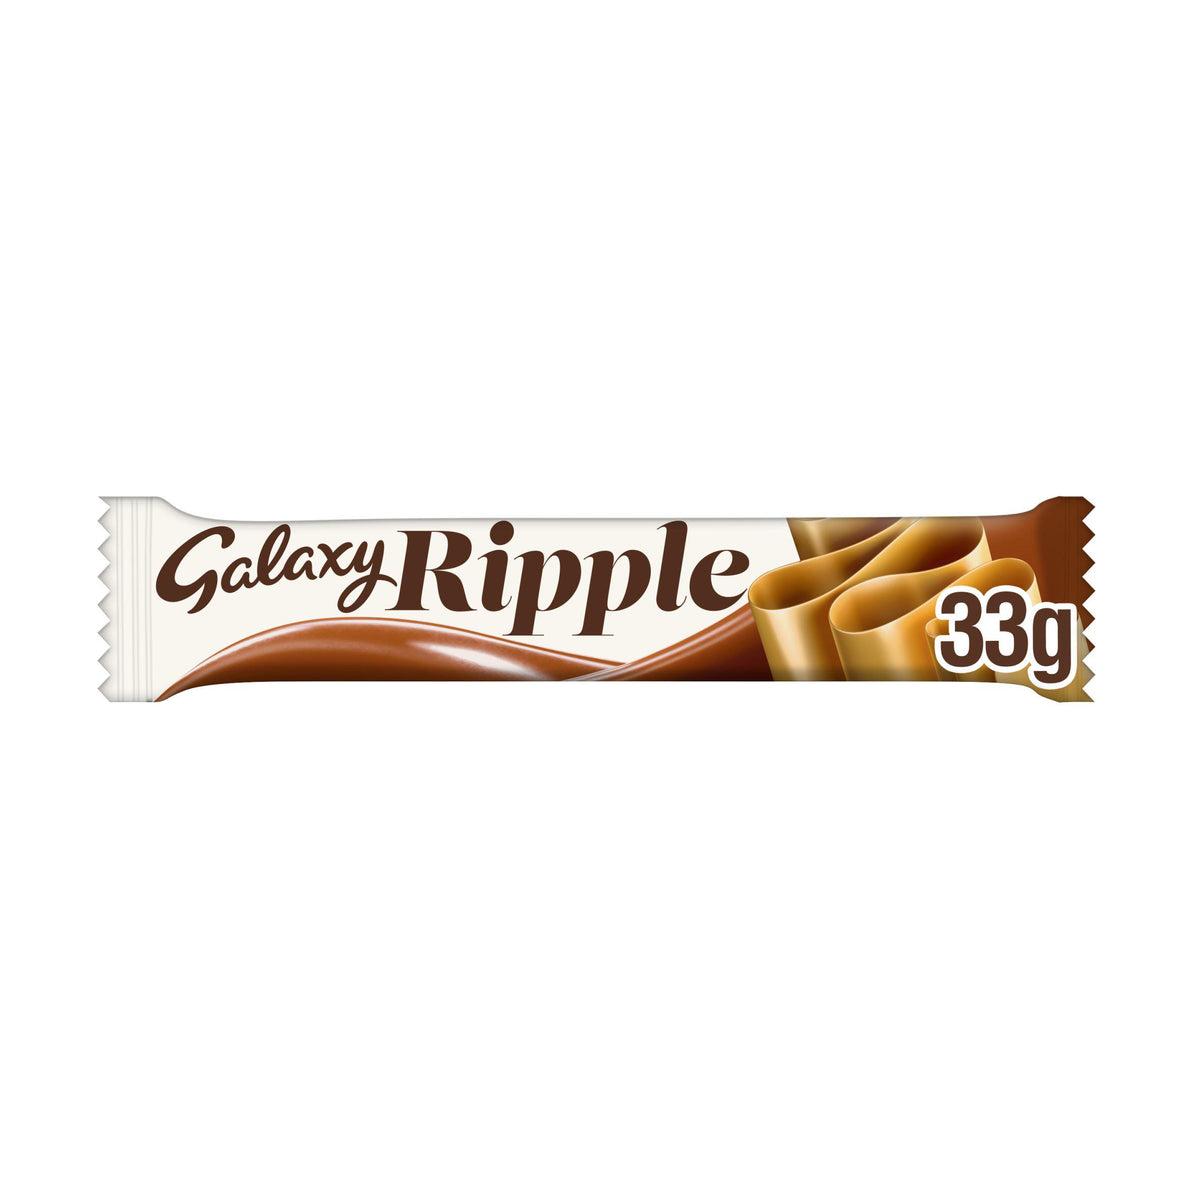 Galaxy Ripple Milk Chocolate 33g